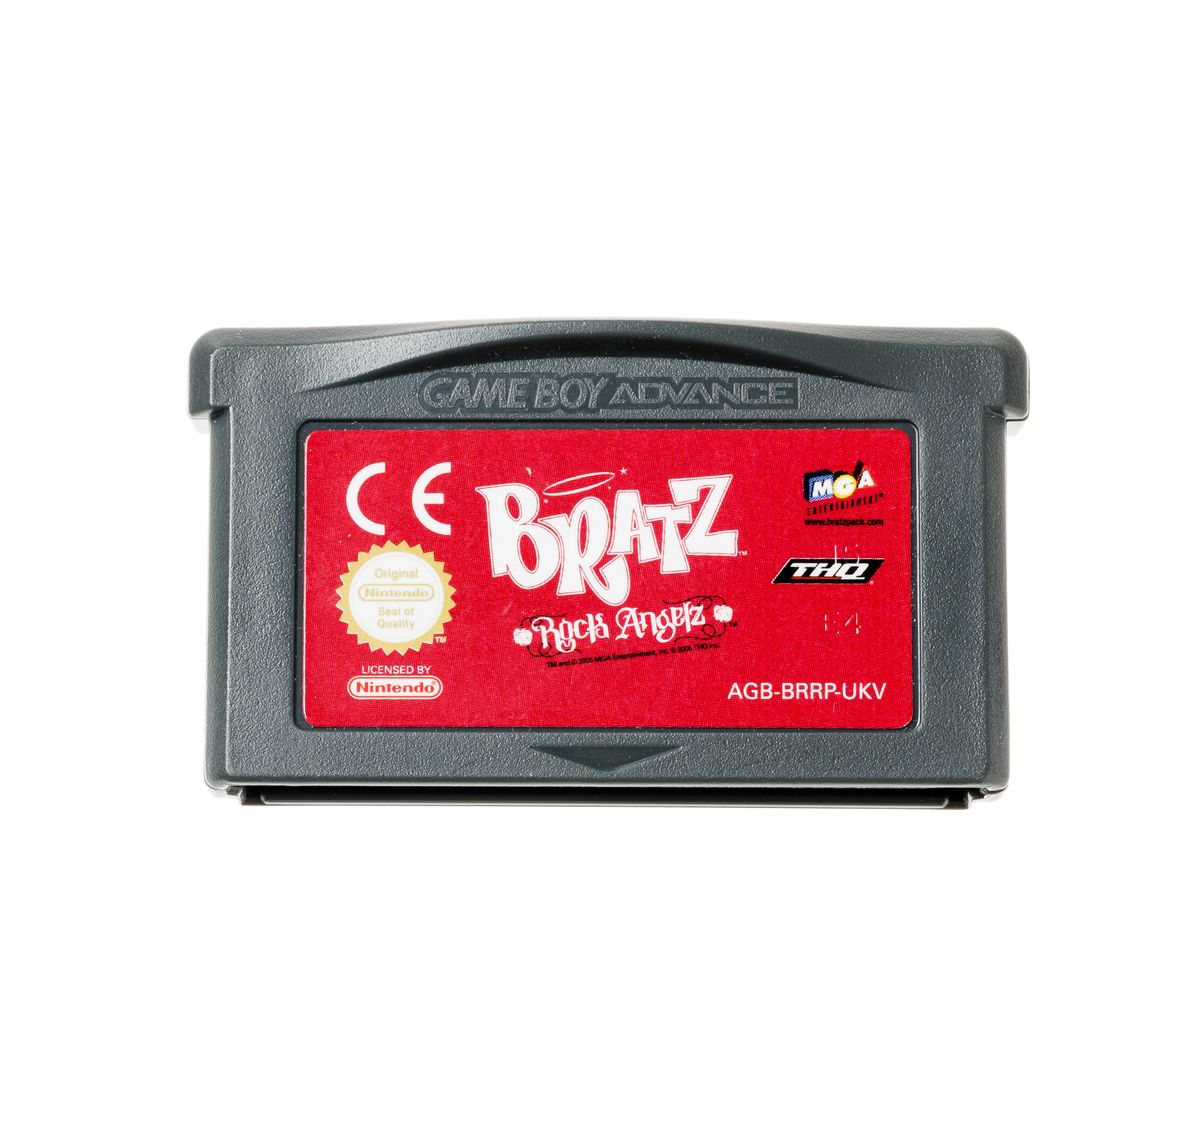 Bratz Rock Angelz - Gameboy Advance Games